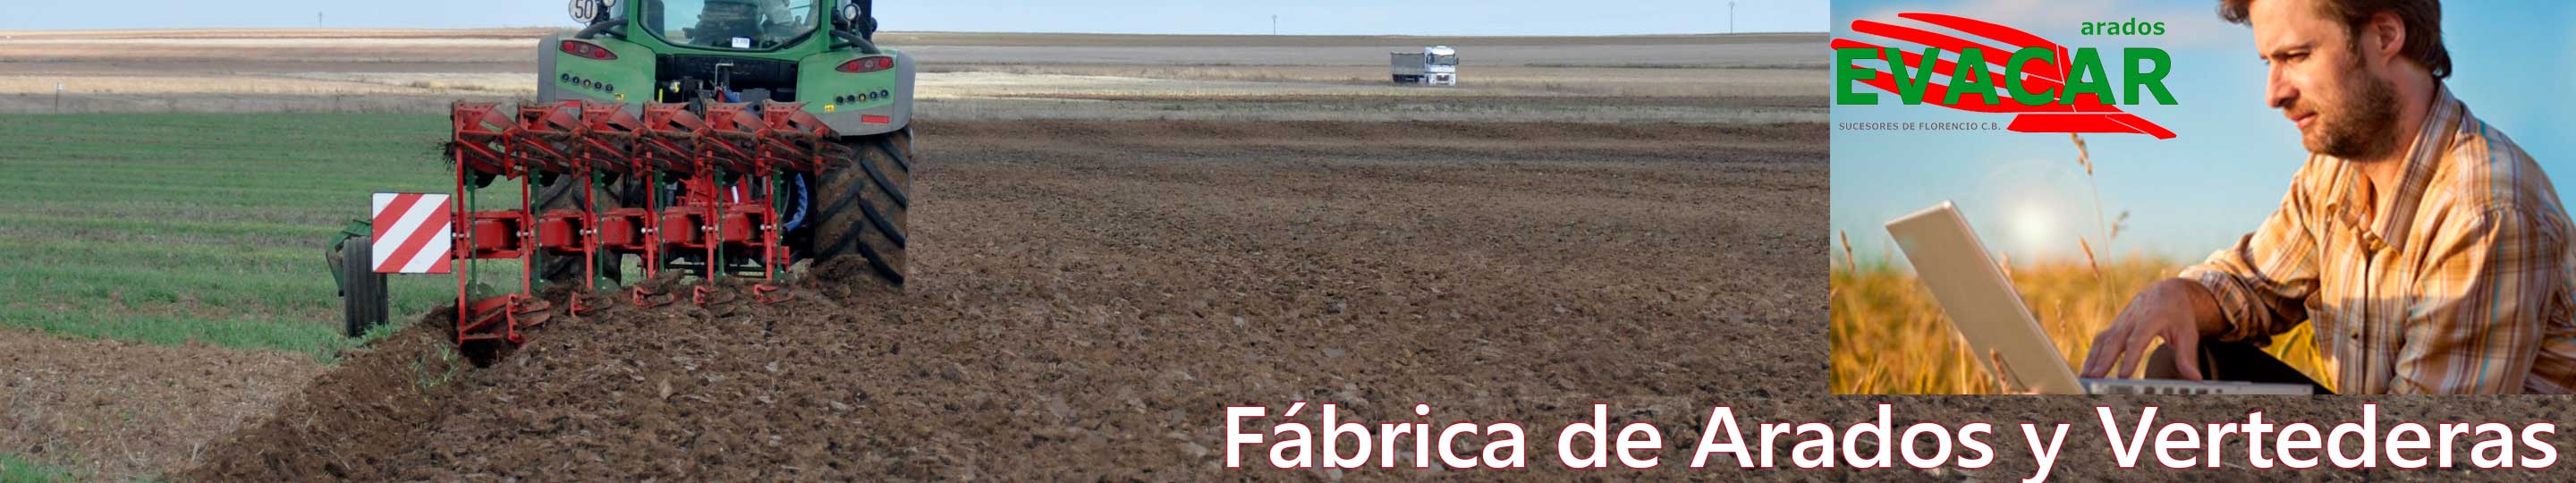 Contactar con EVACAR. Arados, vertederas y maquinaria agrícola. Palencia de Negrilla. Salamanca.